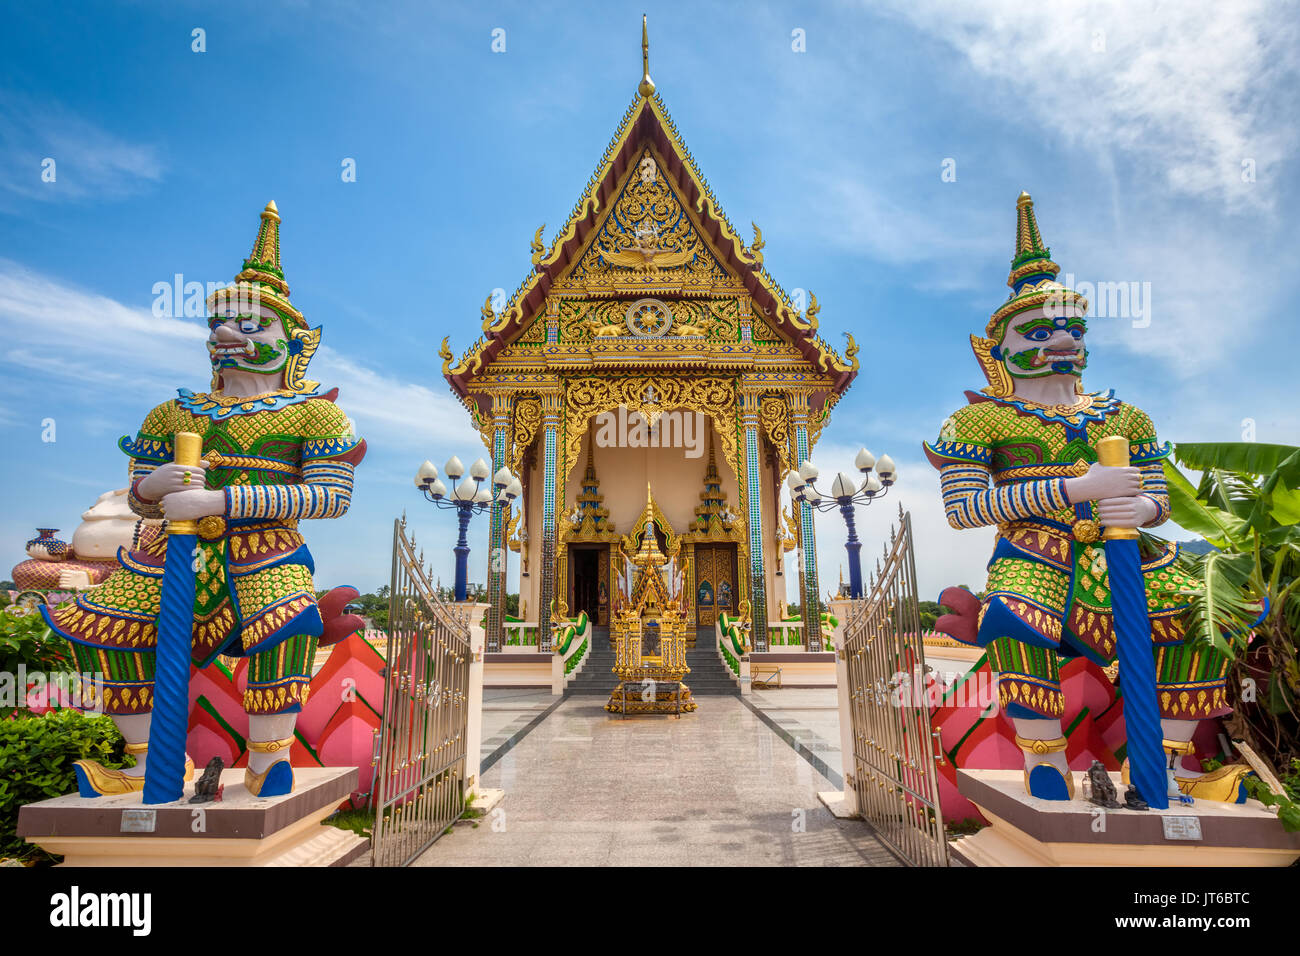 Les tuteurs géant à l'entrée de la pagode bouddhiste, temple Wat Plai Laem Suwannaram, Ban Bo Phut, Koh Samui, Thaïlande Banque D'Images